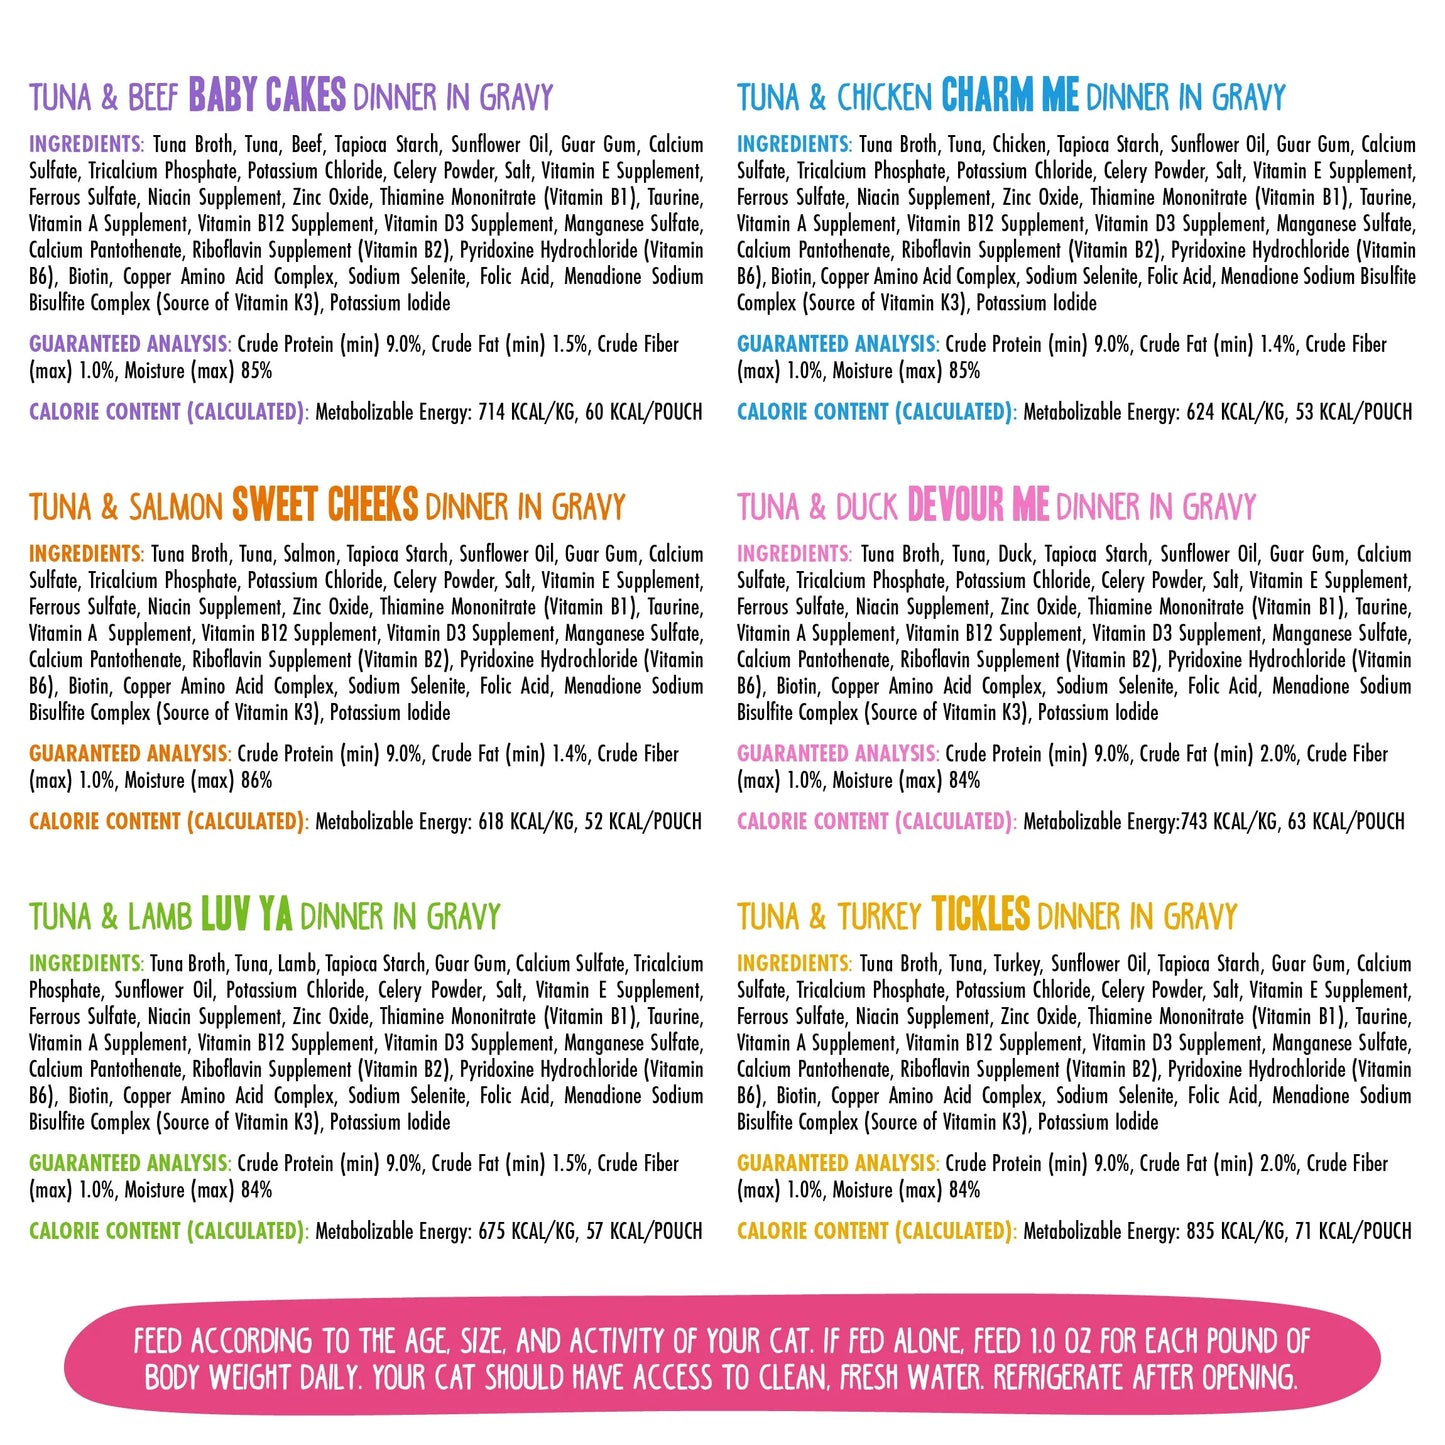 Weruva BFF Pouch Rainbow Á Gogo Variety Pack